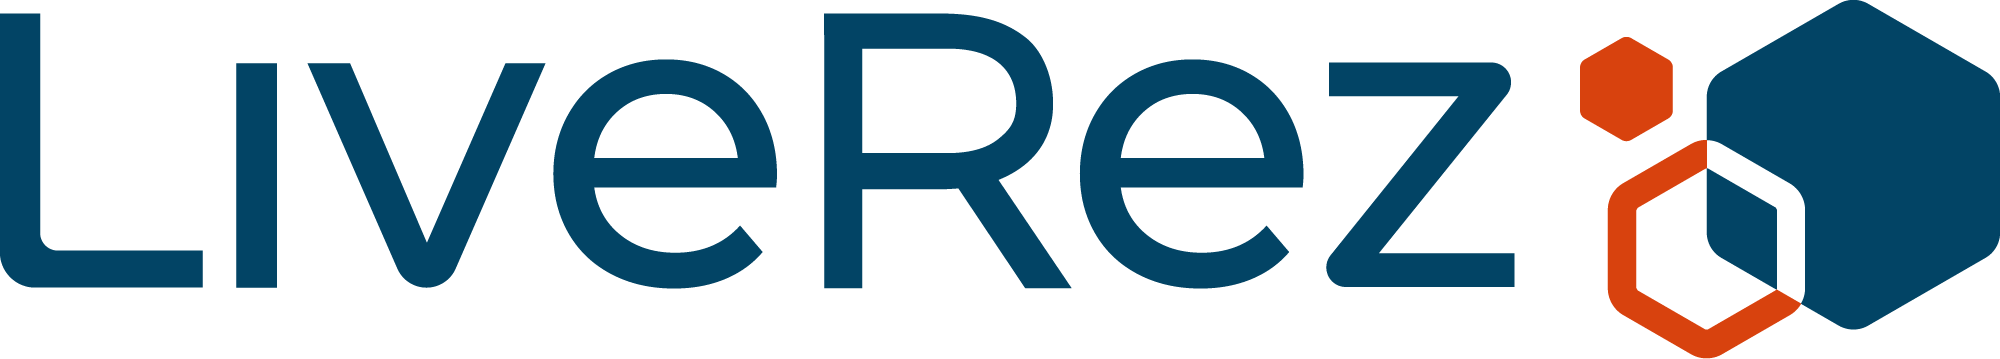 LR_Logo_Horizontal